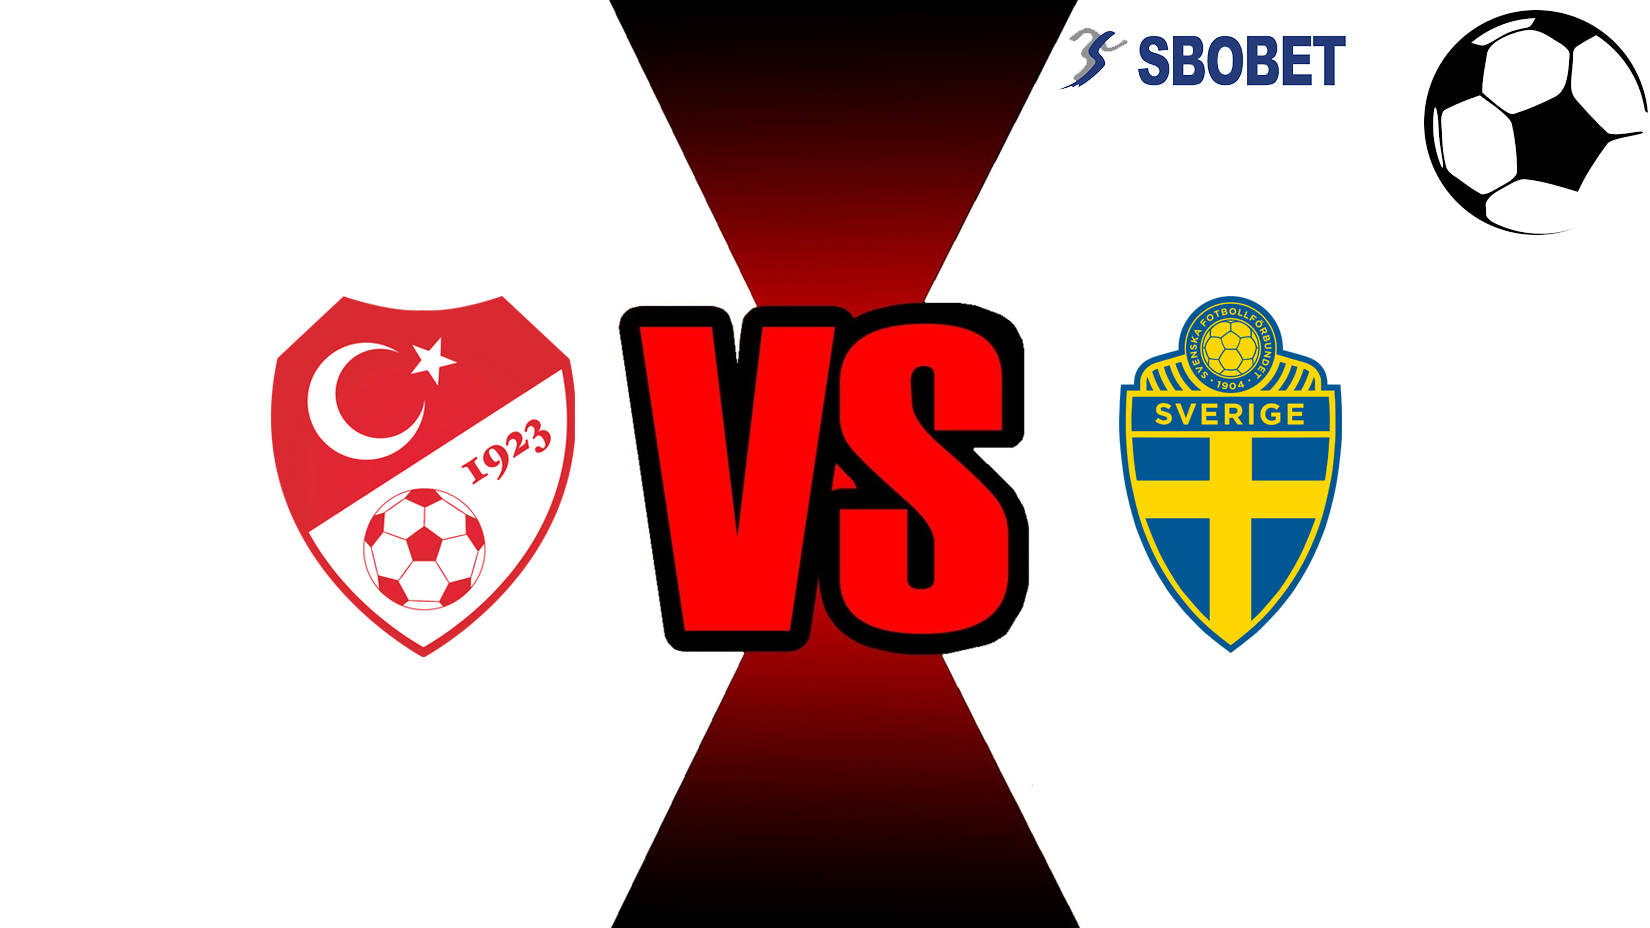 Prediksi Skor Bola Online Turkey vs Sweden 18 November 2018